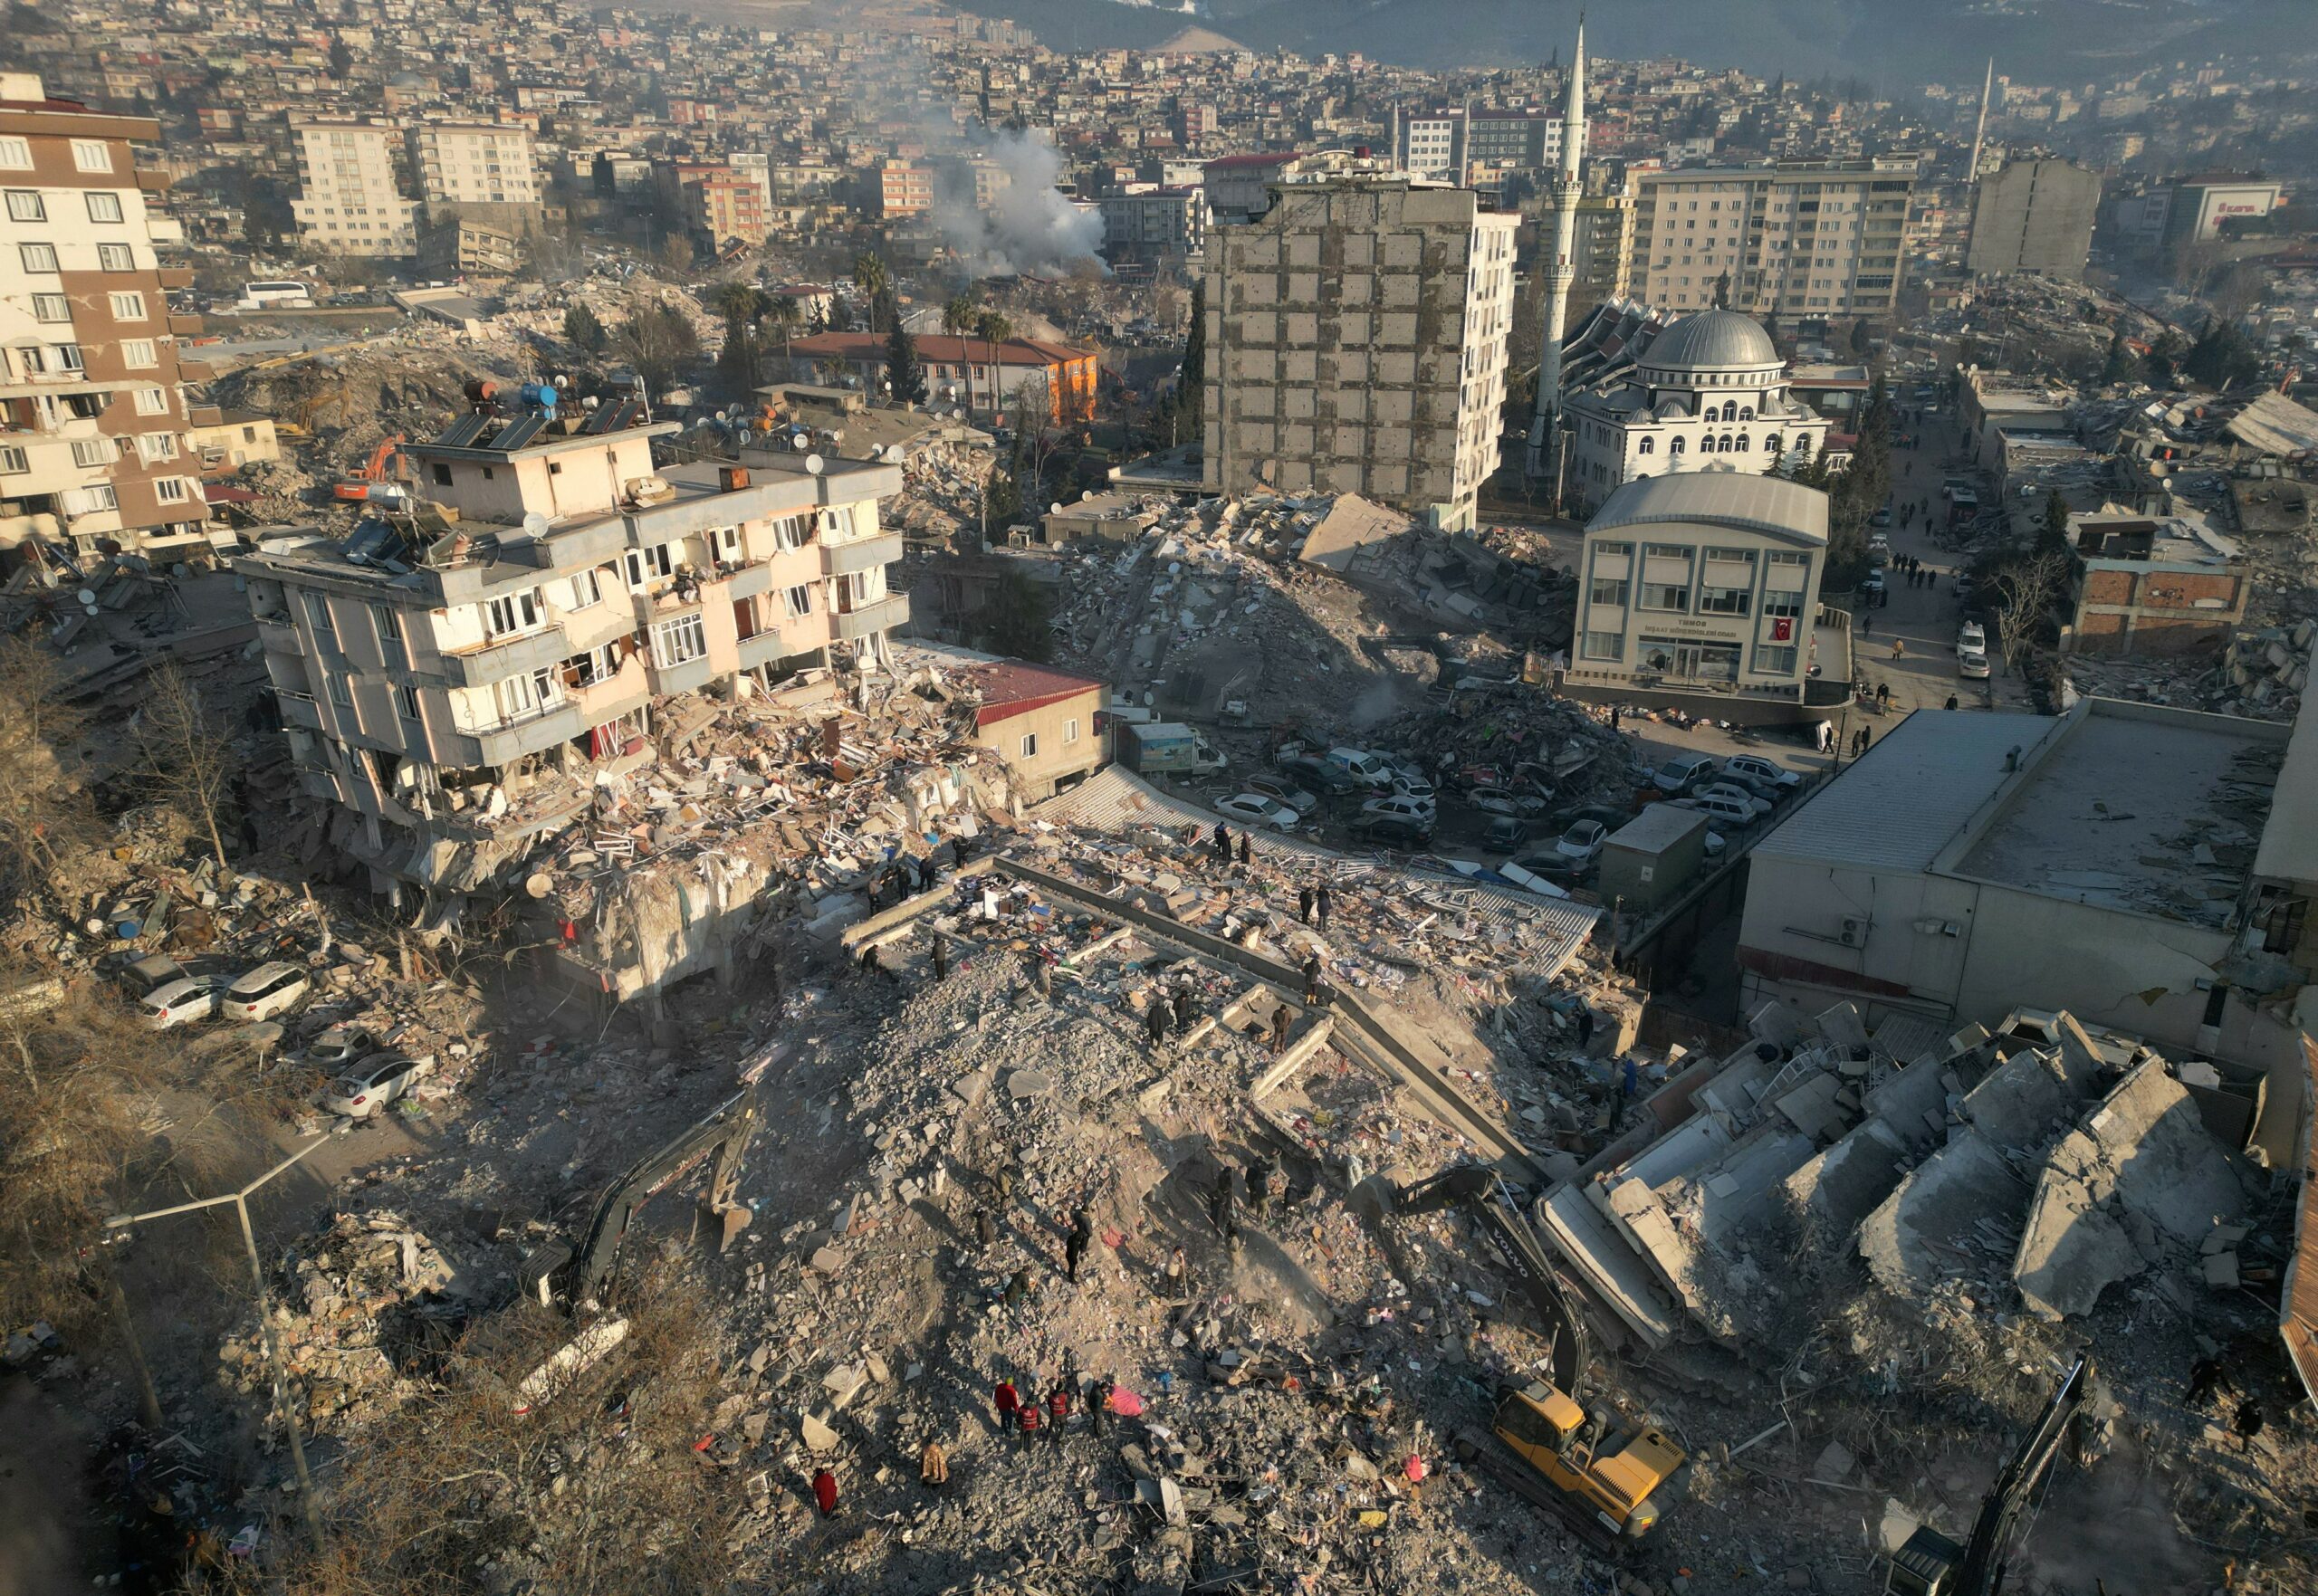 Harapan Memudar Bagi Para Penyintas Saat Korban Gempa Turki-Suriah Melewati 20.000